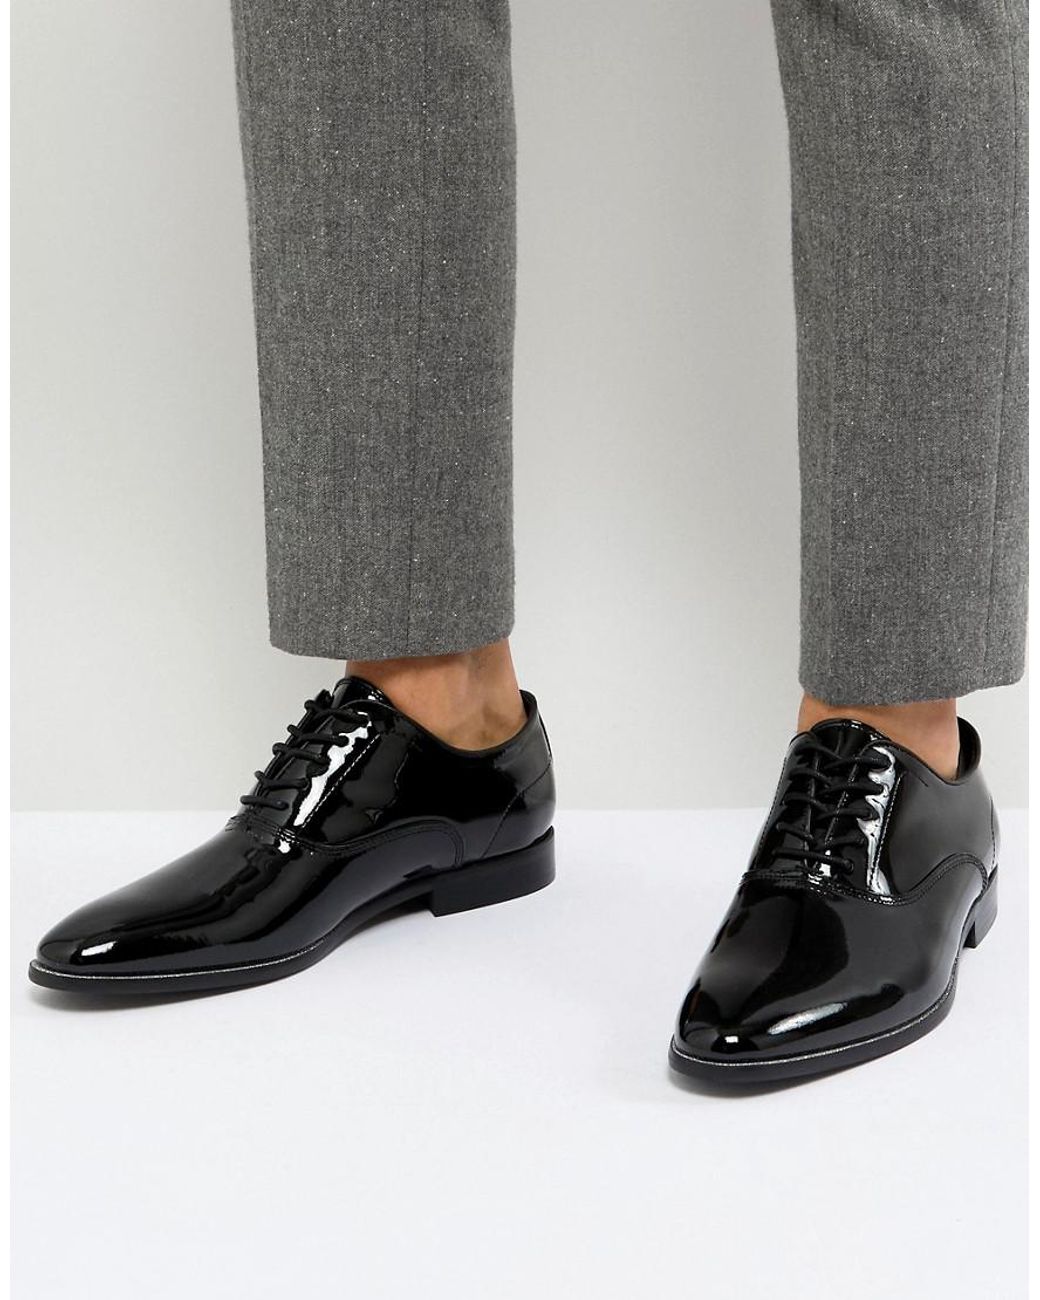 Men's Black Patent Lace Up Dress Shoe